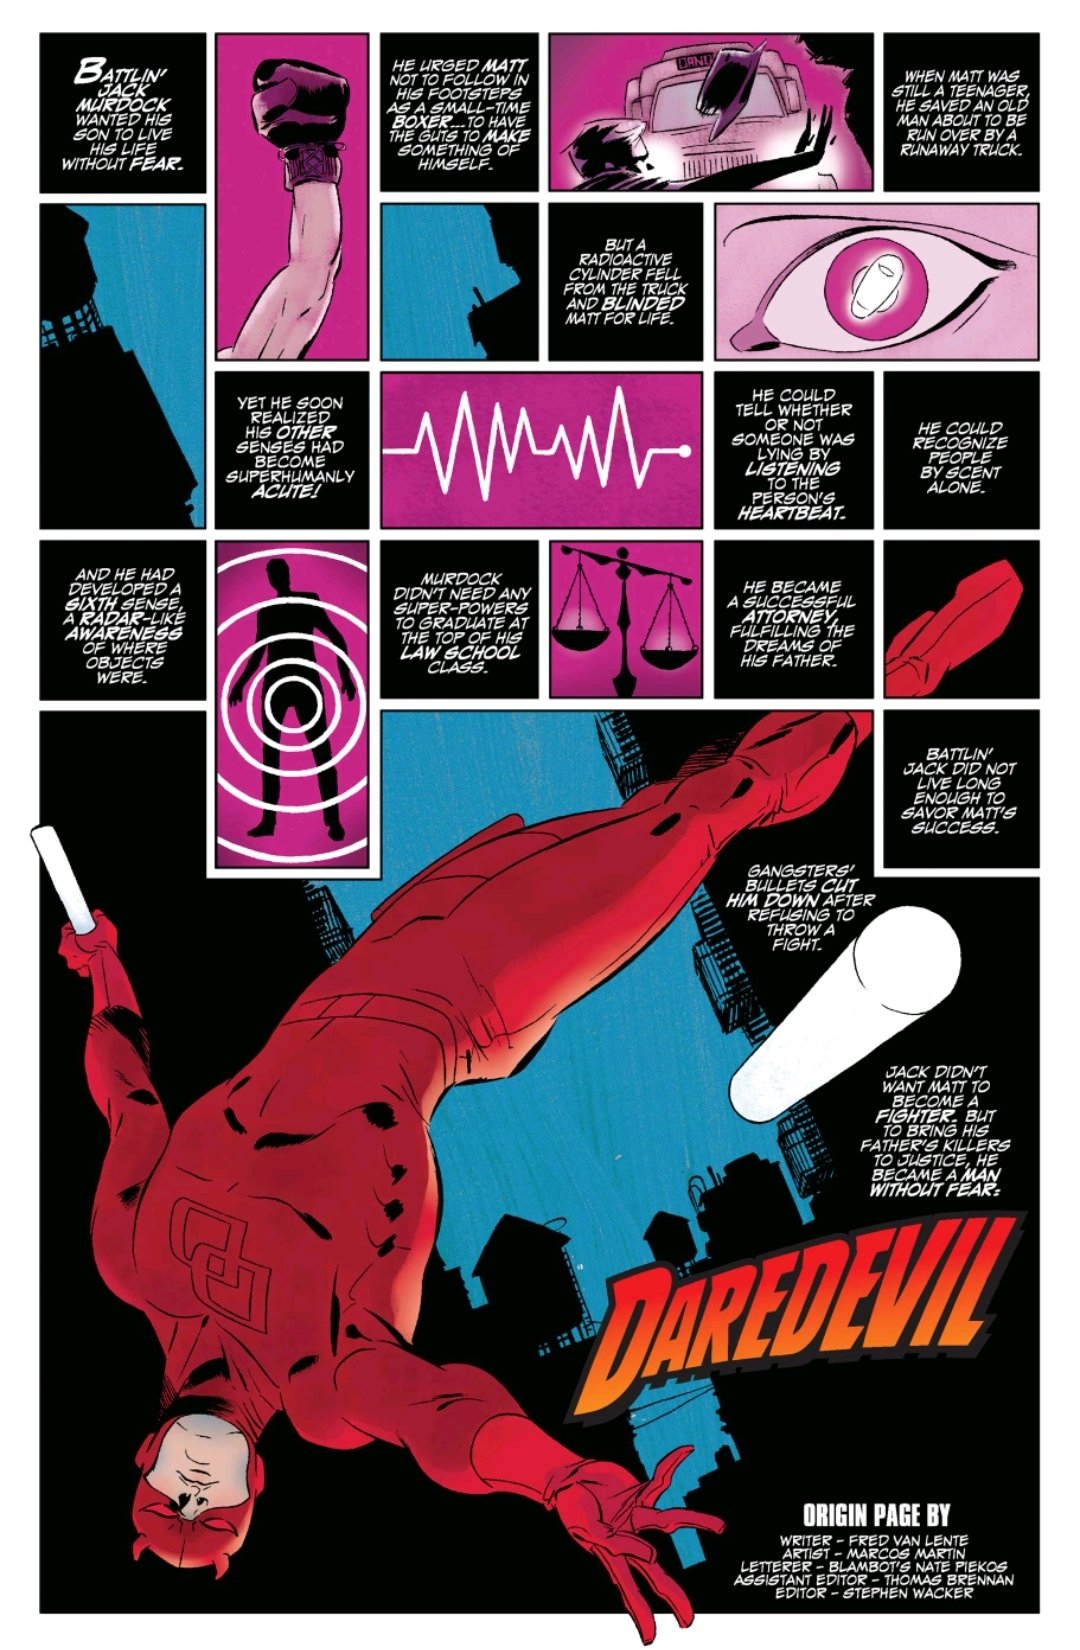 Daredevil origin page